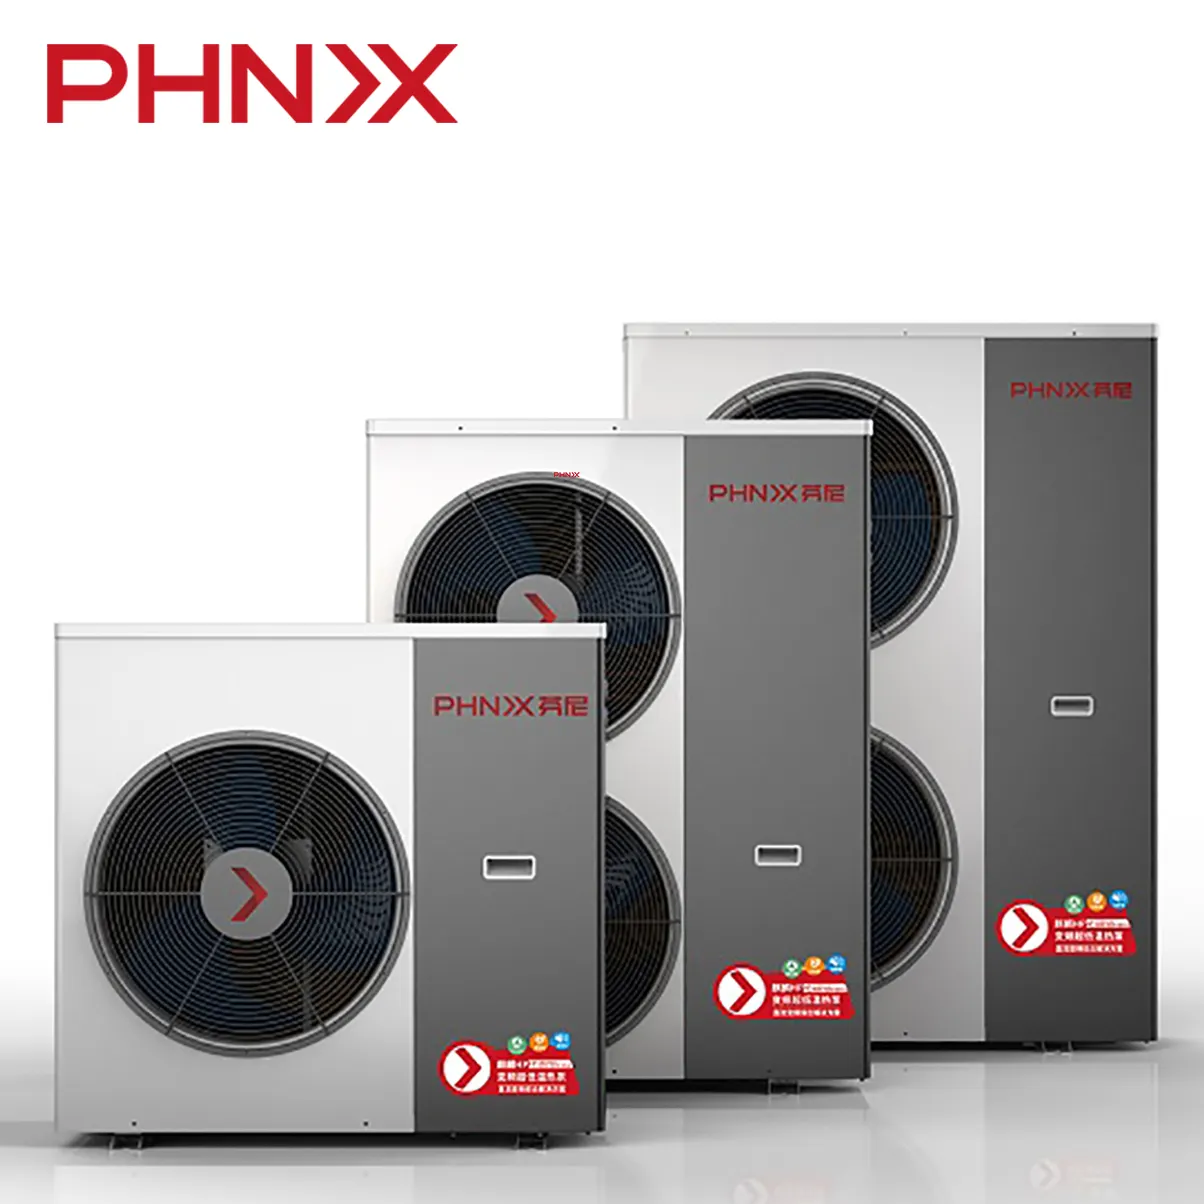 PHNIX HP14 2020 wärmepumpe heizung system + wasserpumpe für heizung